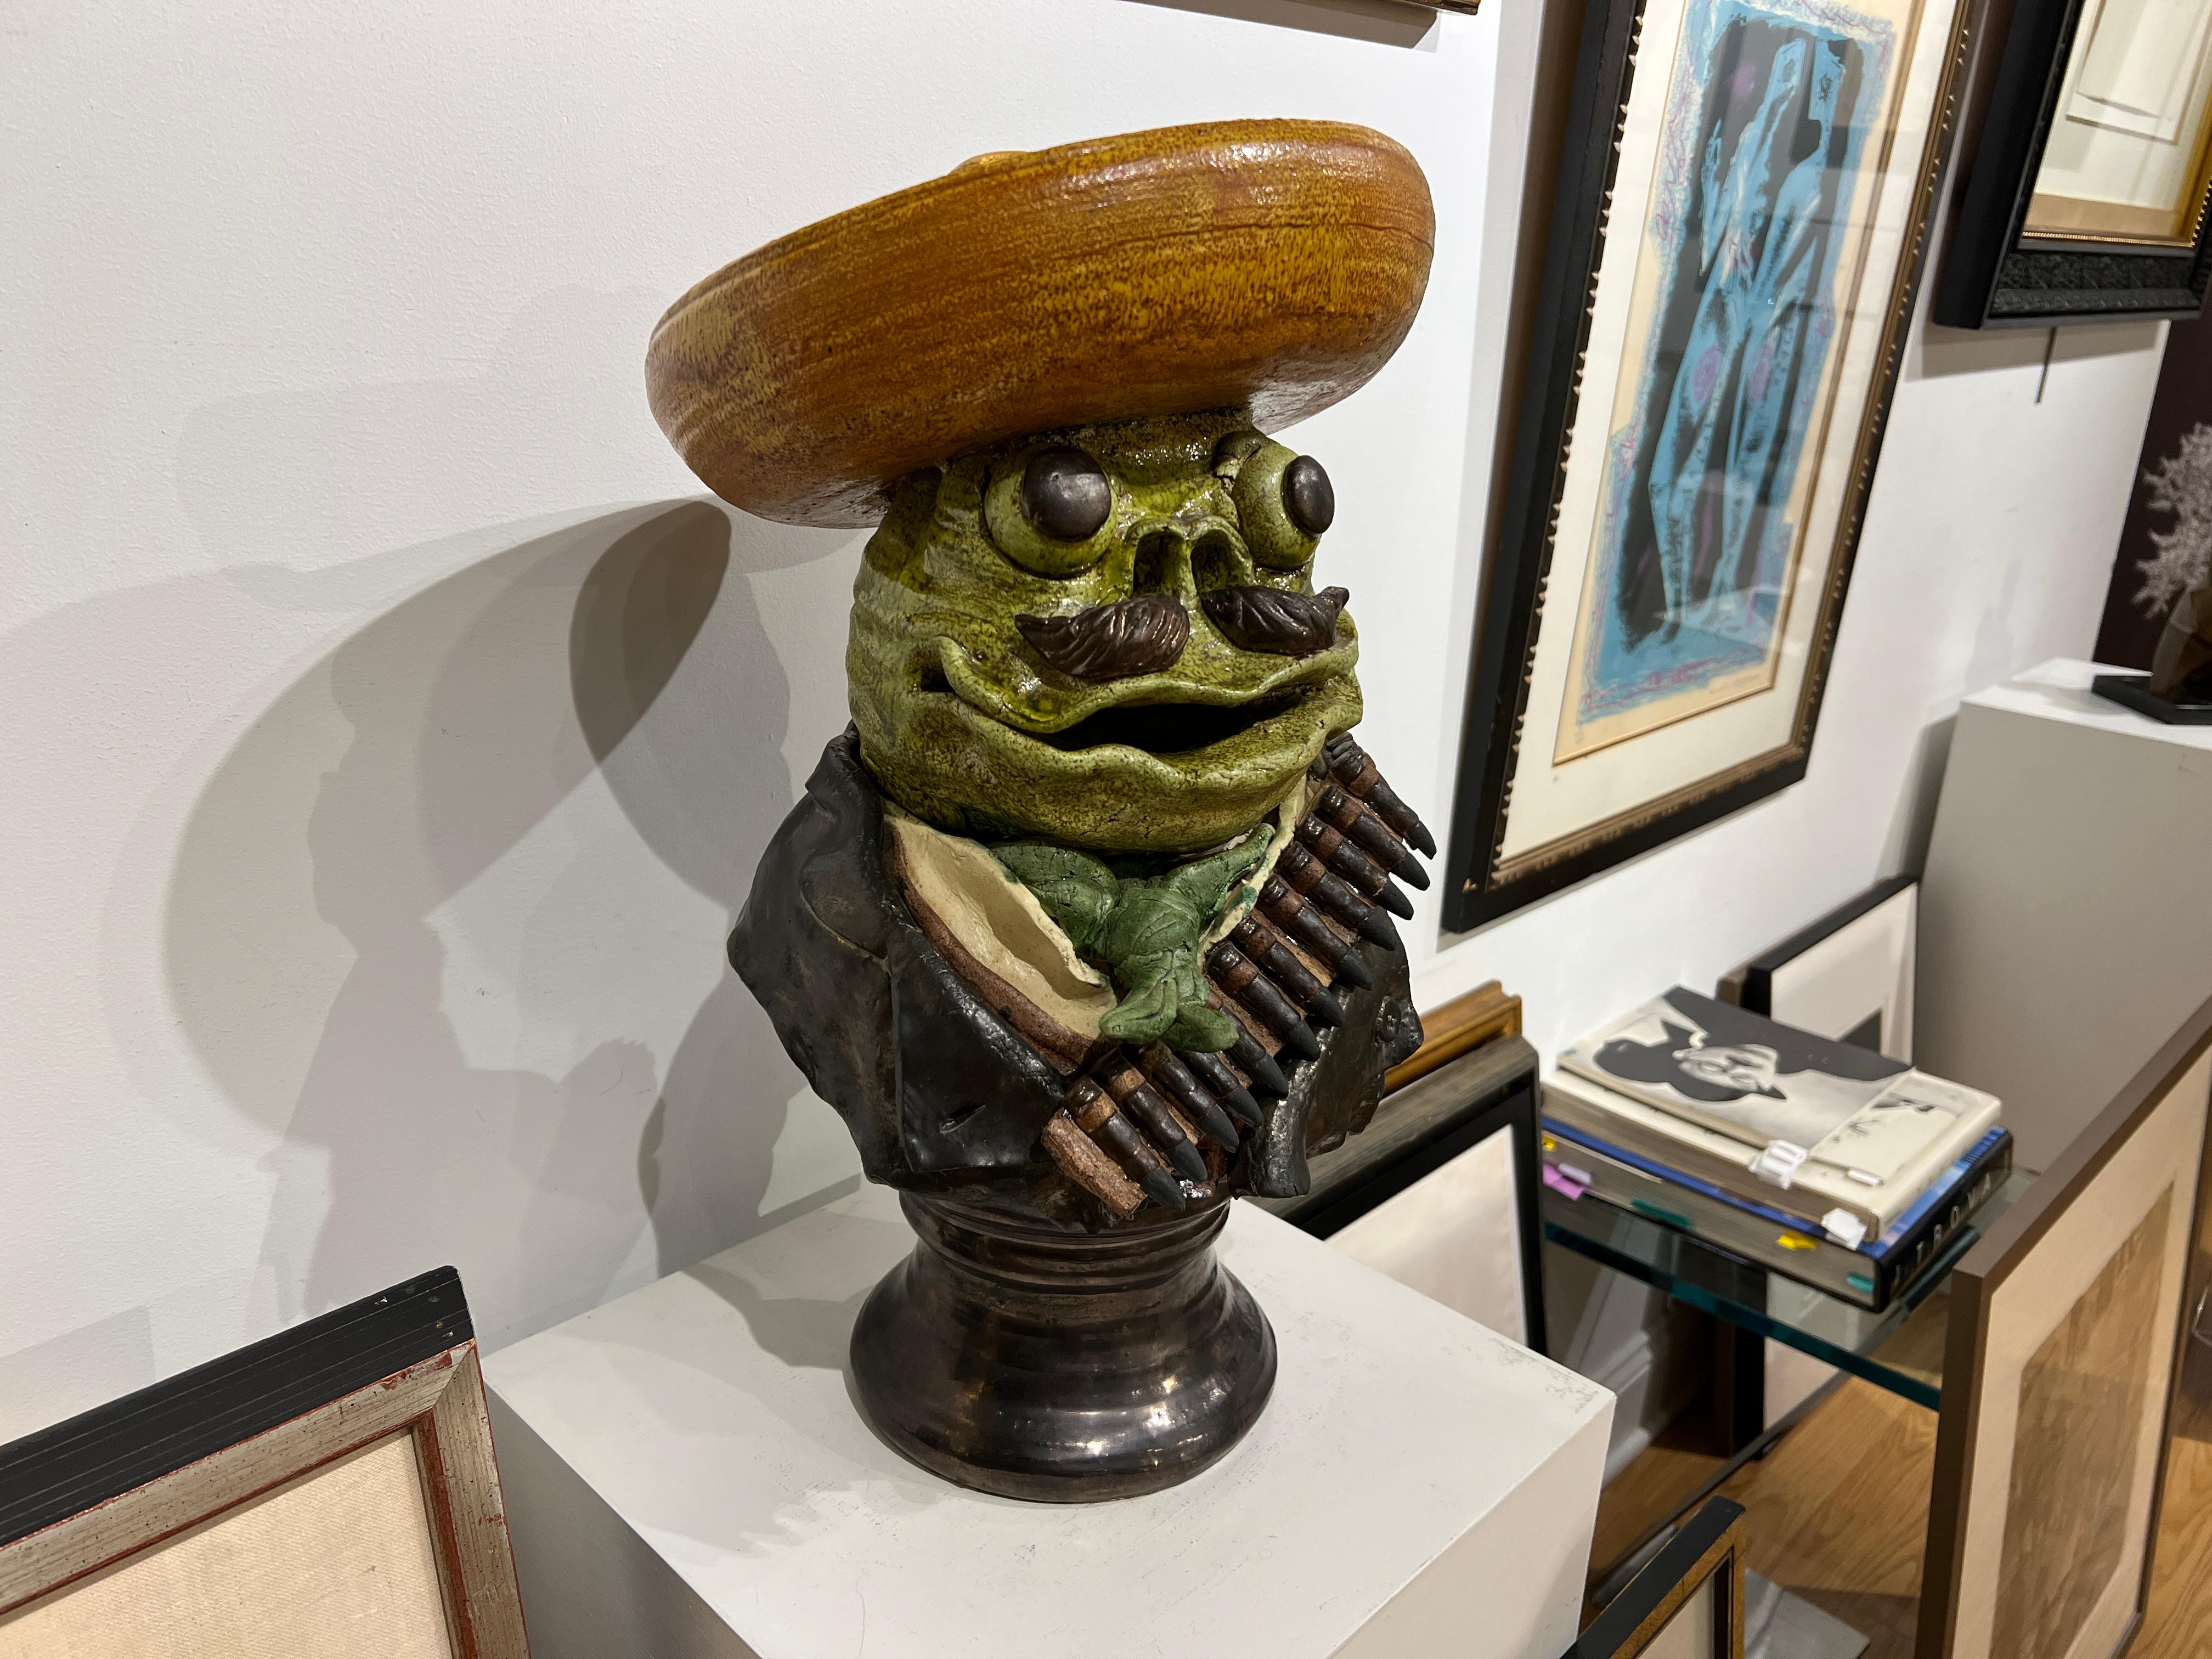 Emiliano Zapata / Frog Revolutionary, 1981
By David Gilhooly (1943-2013)
20